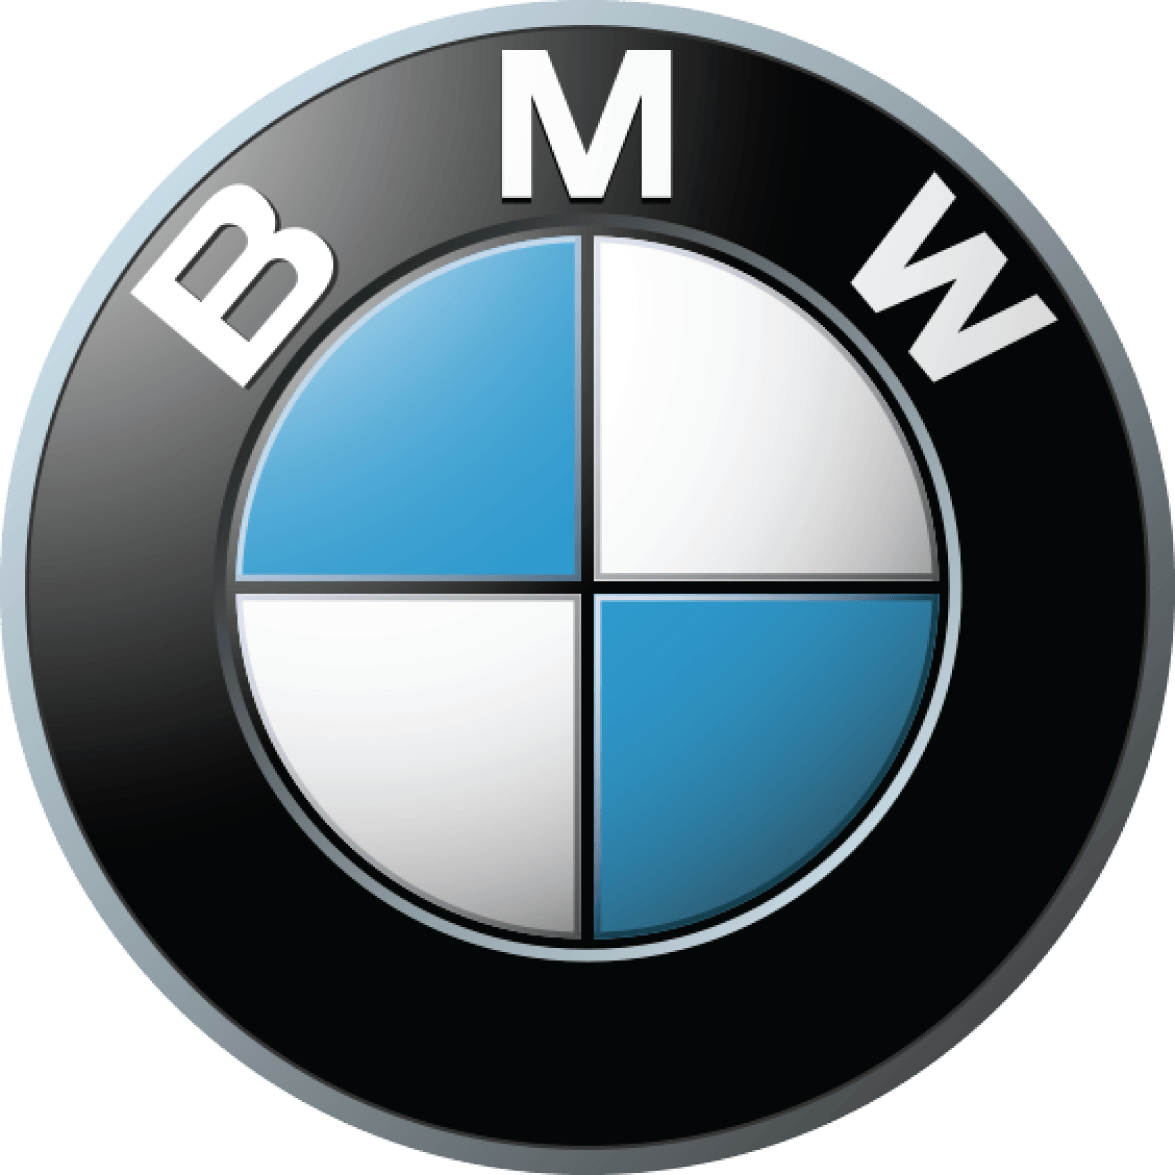 Bmw Car Logo Png Brand Image PNG Image